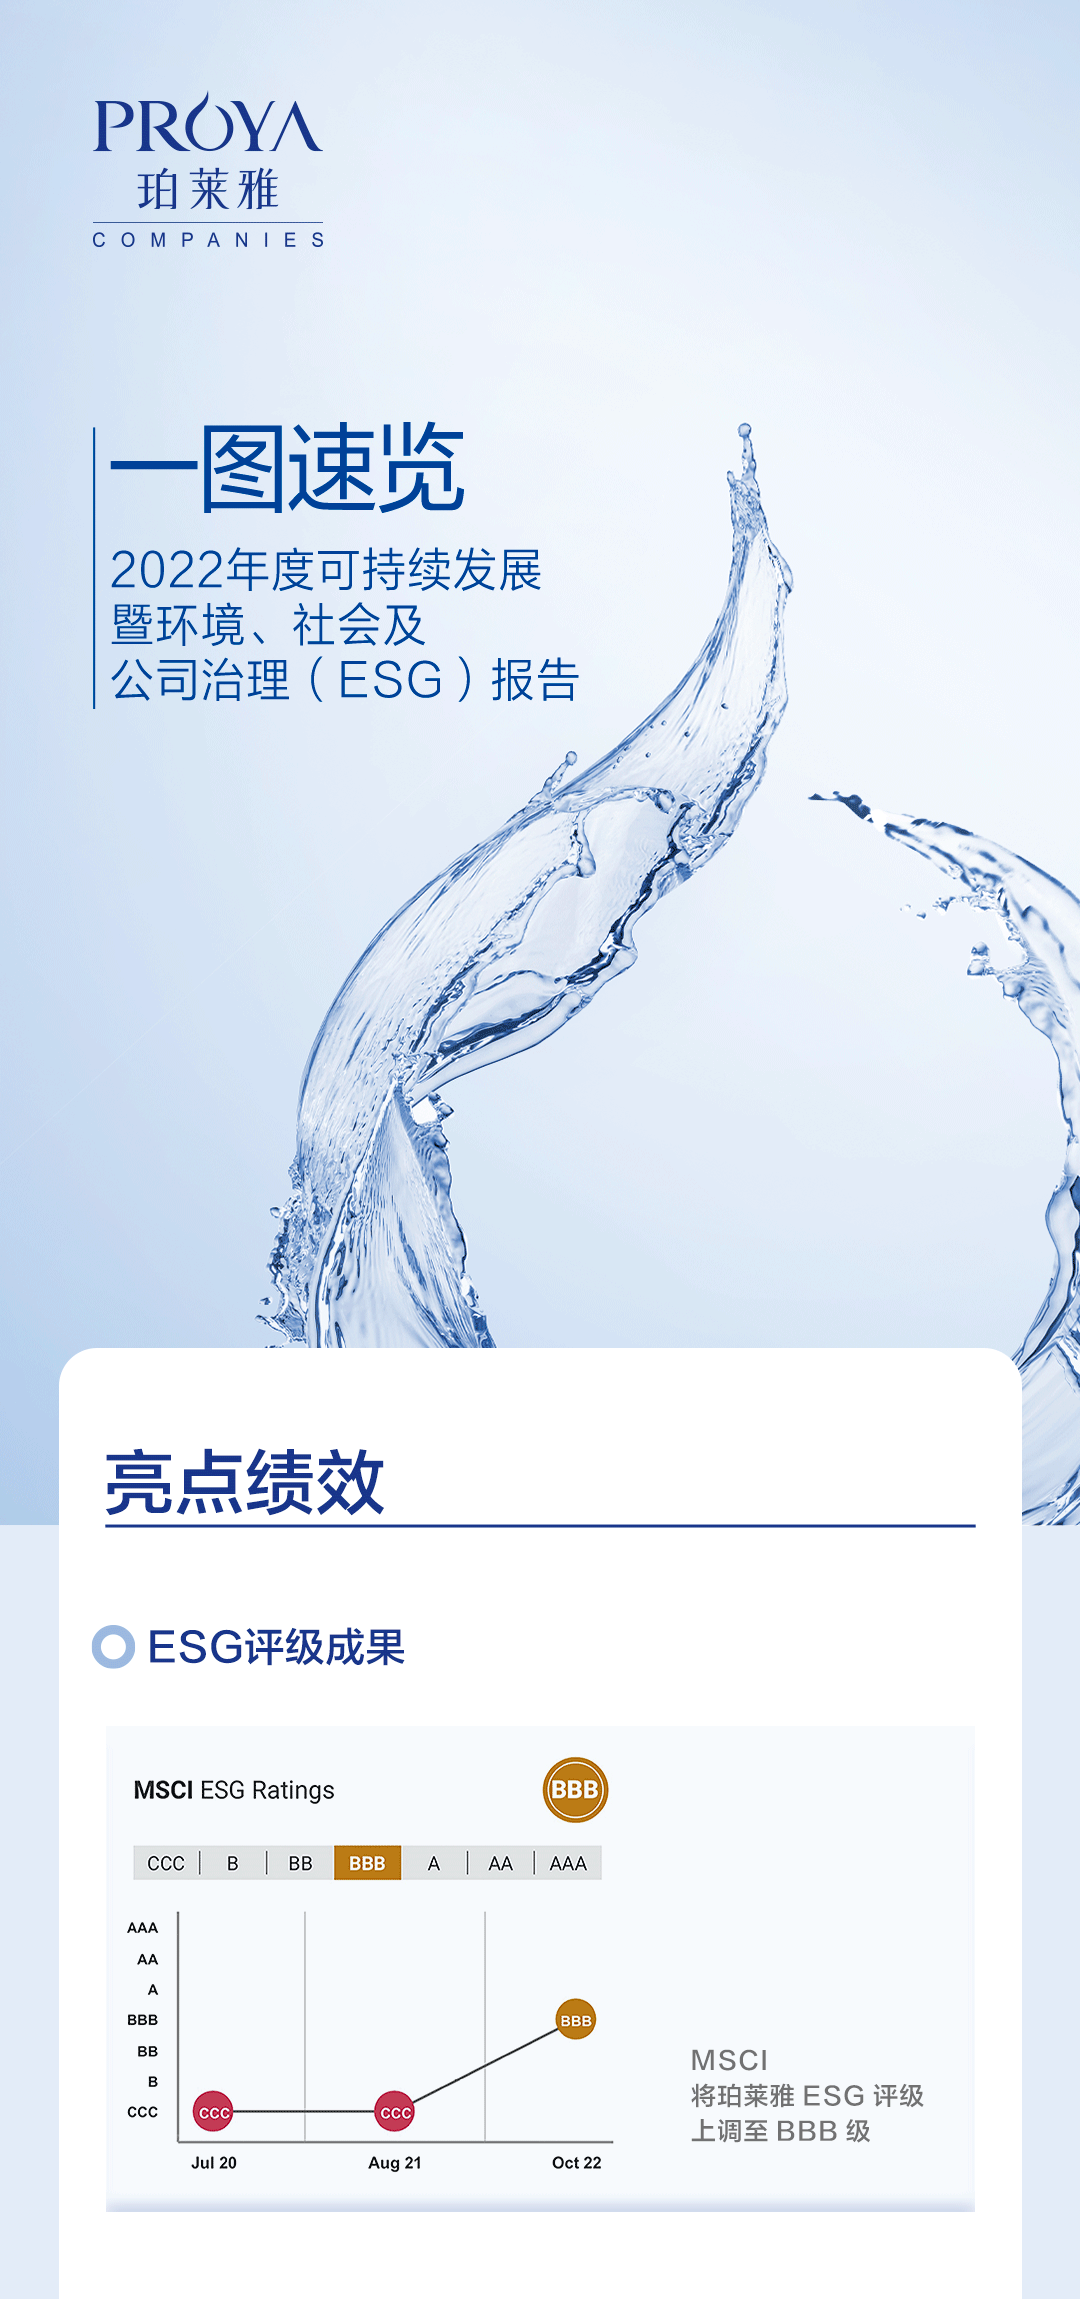 2022-ESG长图中文版发微博_01.gif